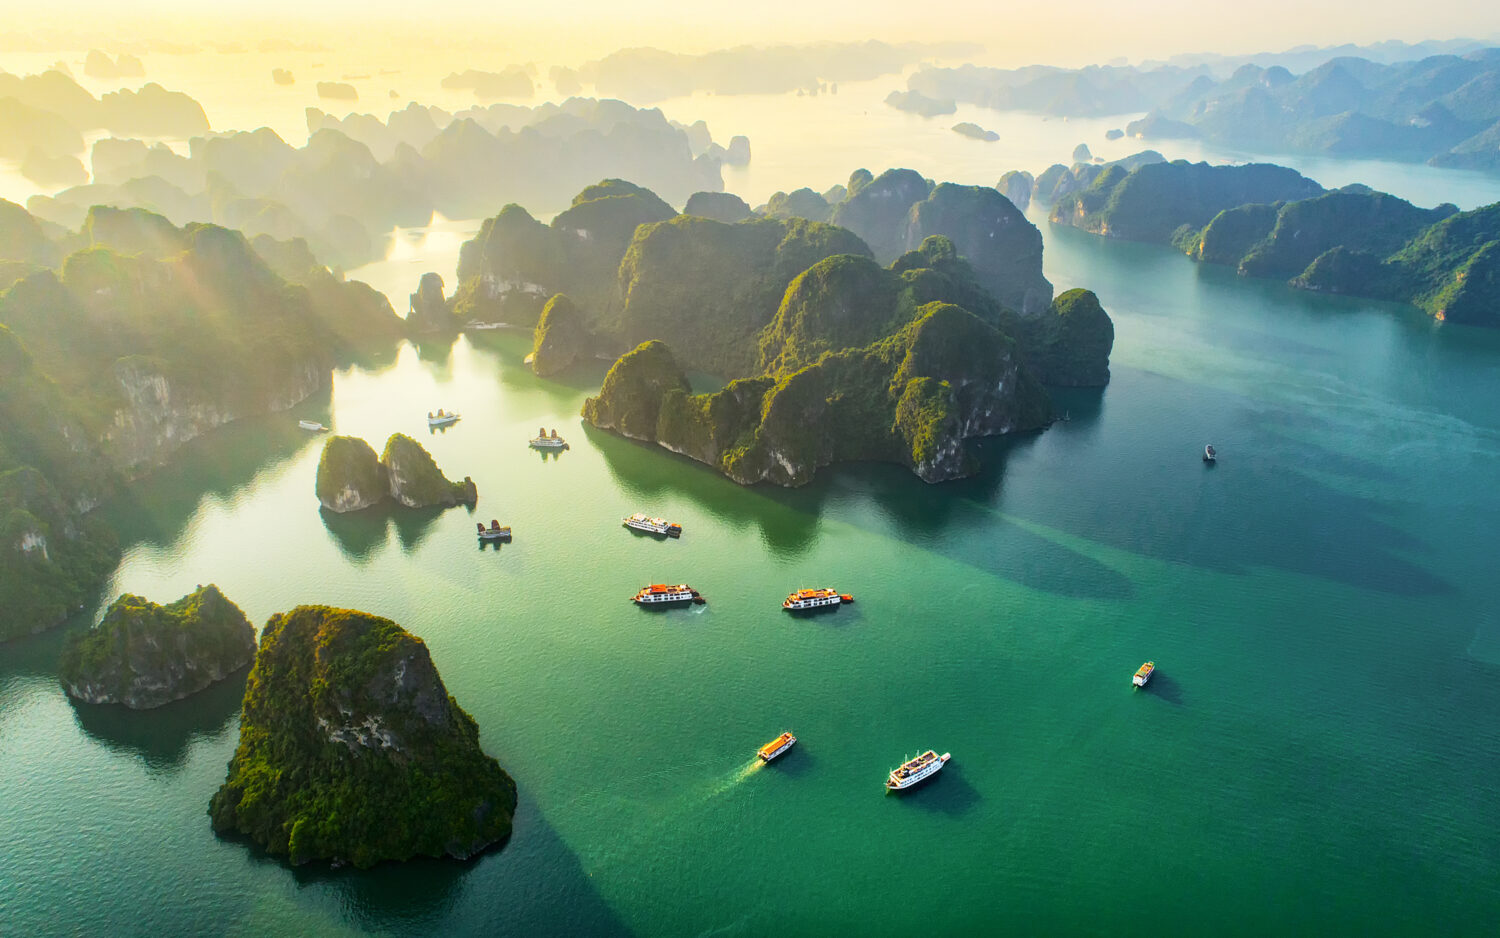 Vista aerea villaggio di pescatori galleggiante e isola rocciosa, baia di Halong, Vietnam, sud-est asiatico.  Sito Patrimonio dell'Umanità dell'UNESCO.  Crociera in barca spazzatura alla baia di Ha Long.  Punto di riferimento popolare, famosa destinazione del Vietnam